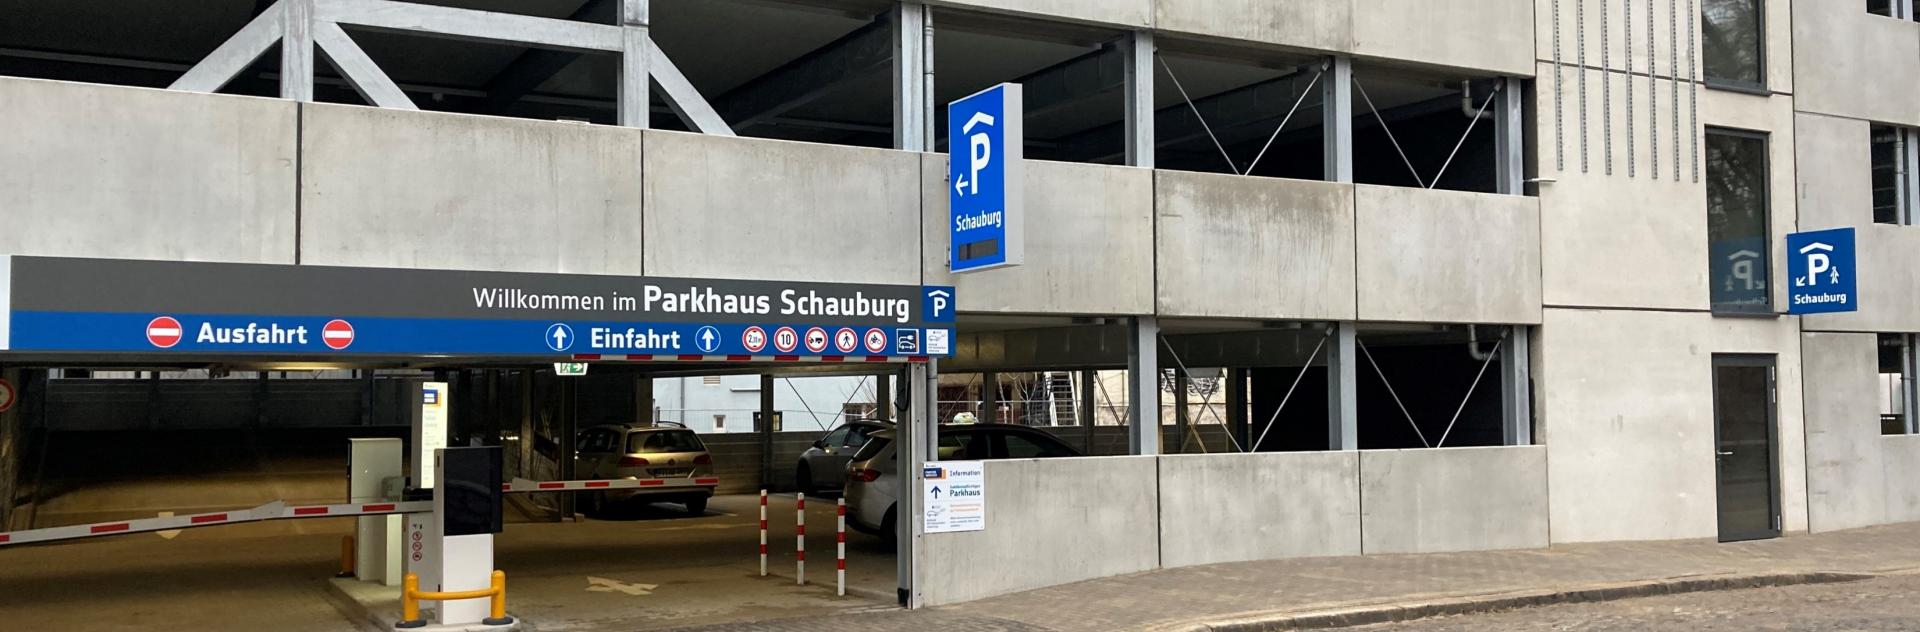 Parkhaus Schauburg Hildesheim